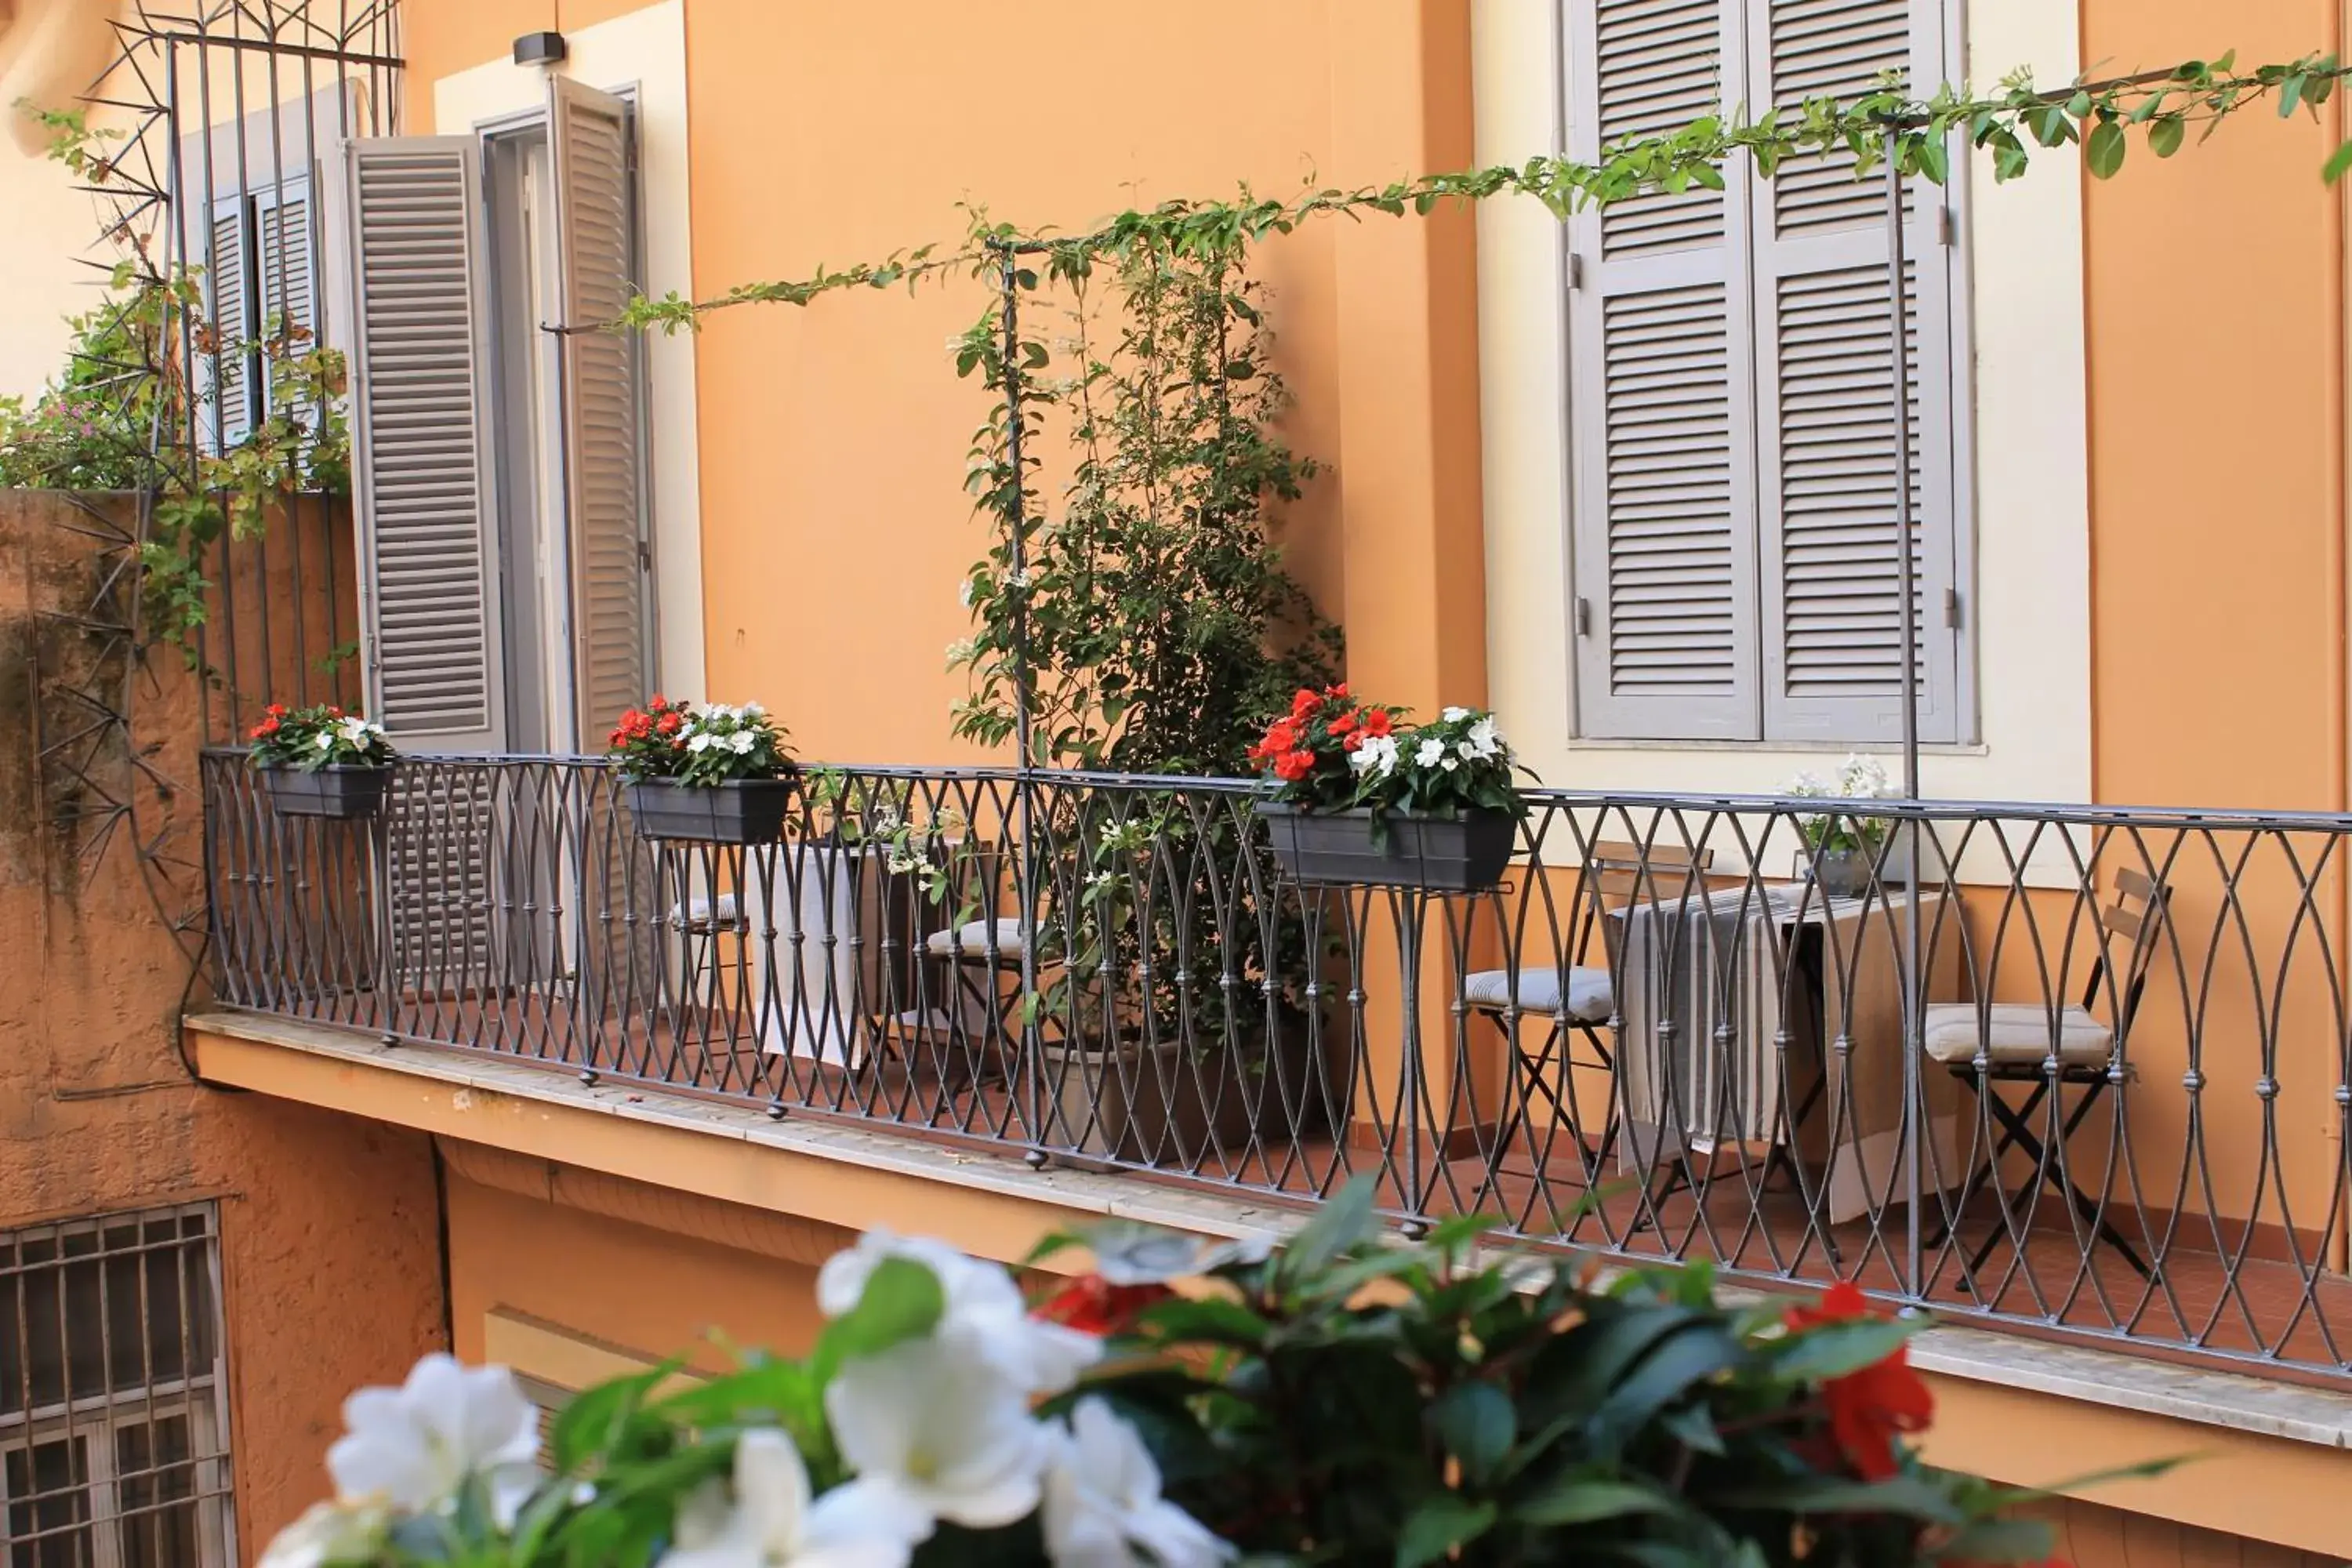 Balcony/Terrace, Patio/Outdoor Area in 504 Corso Suites